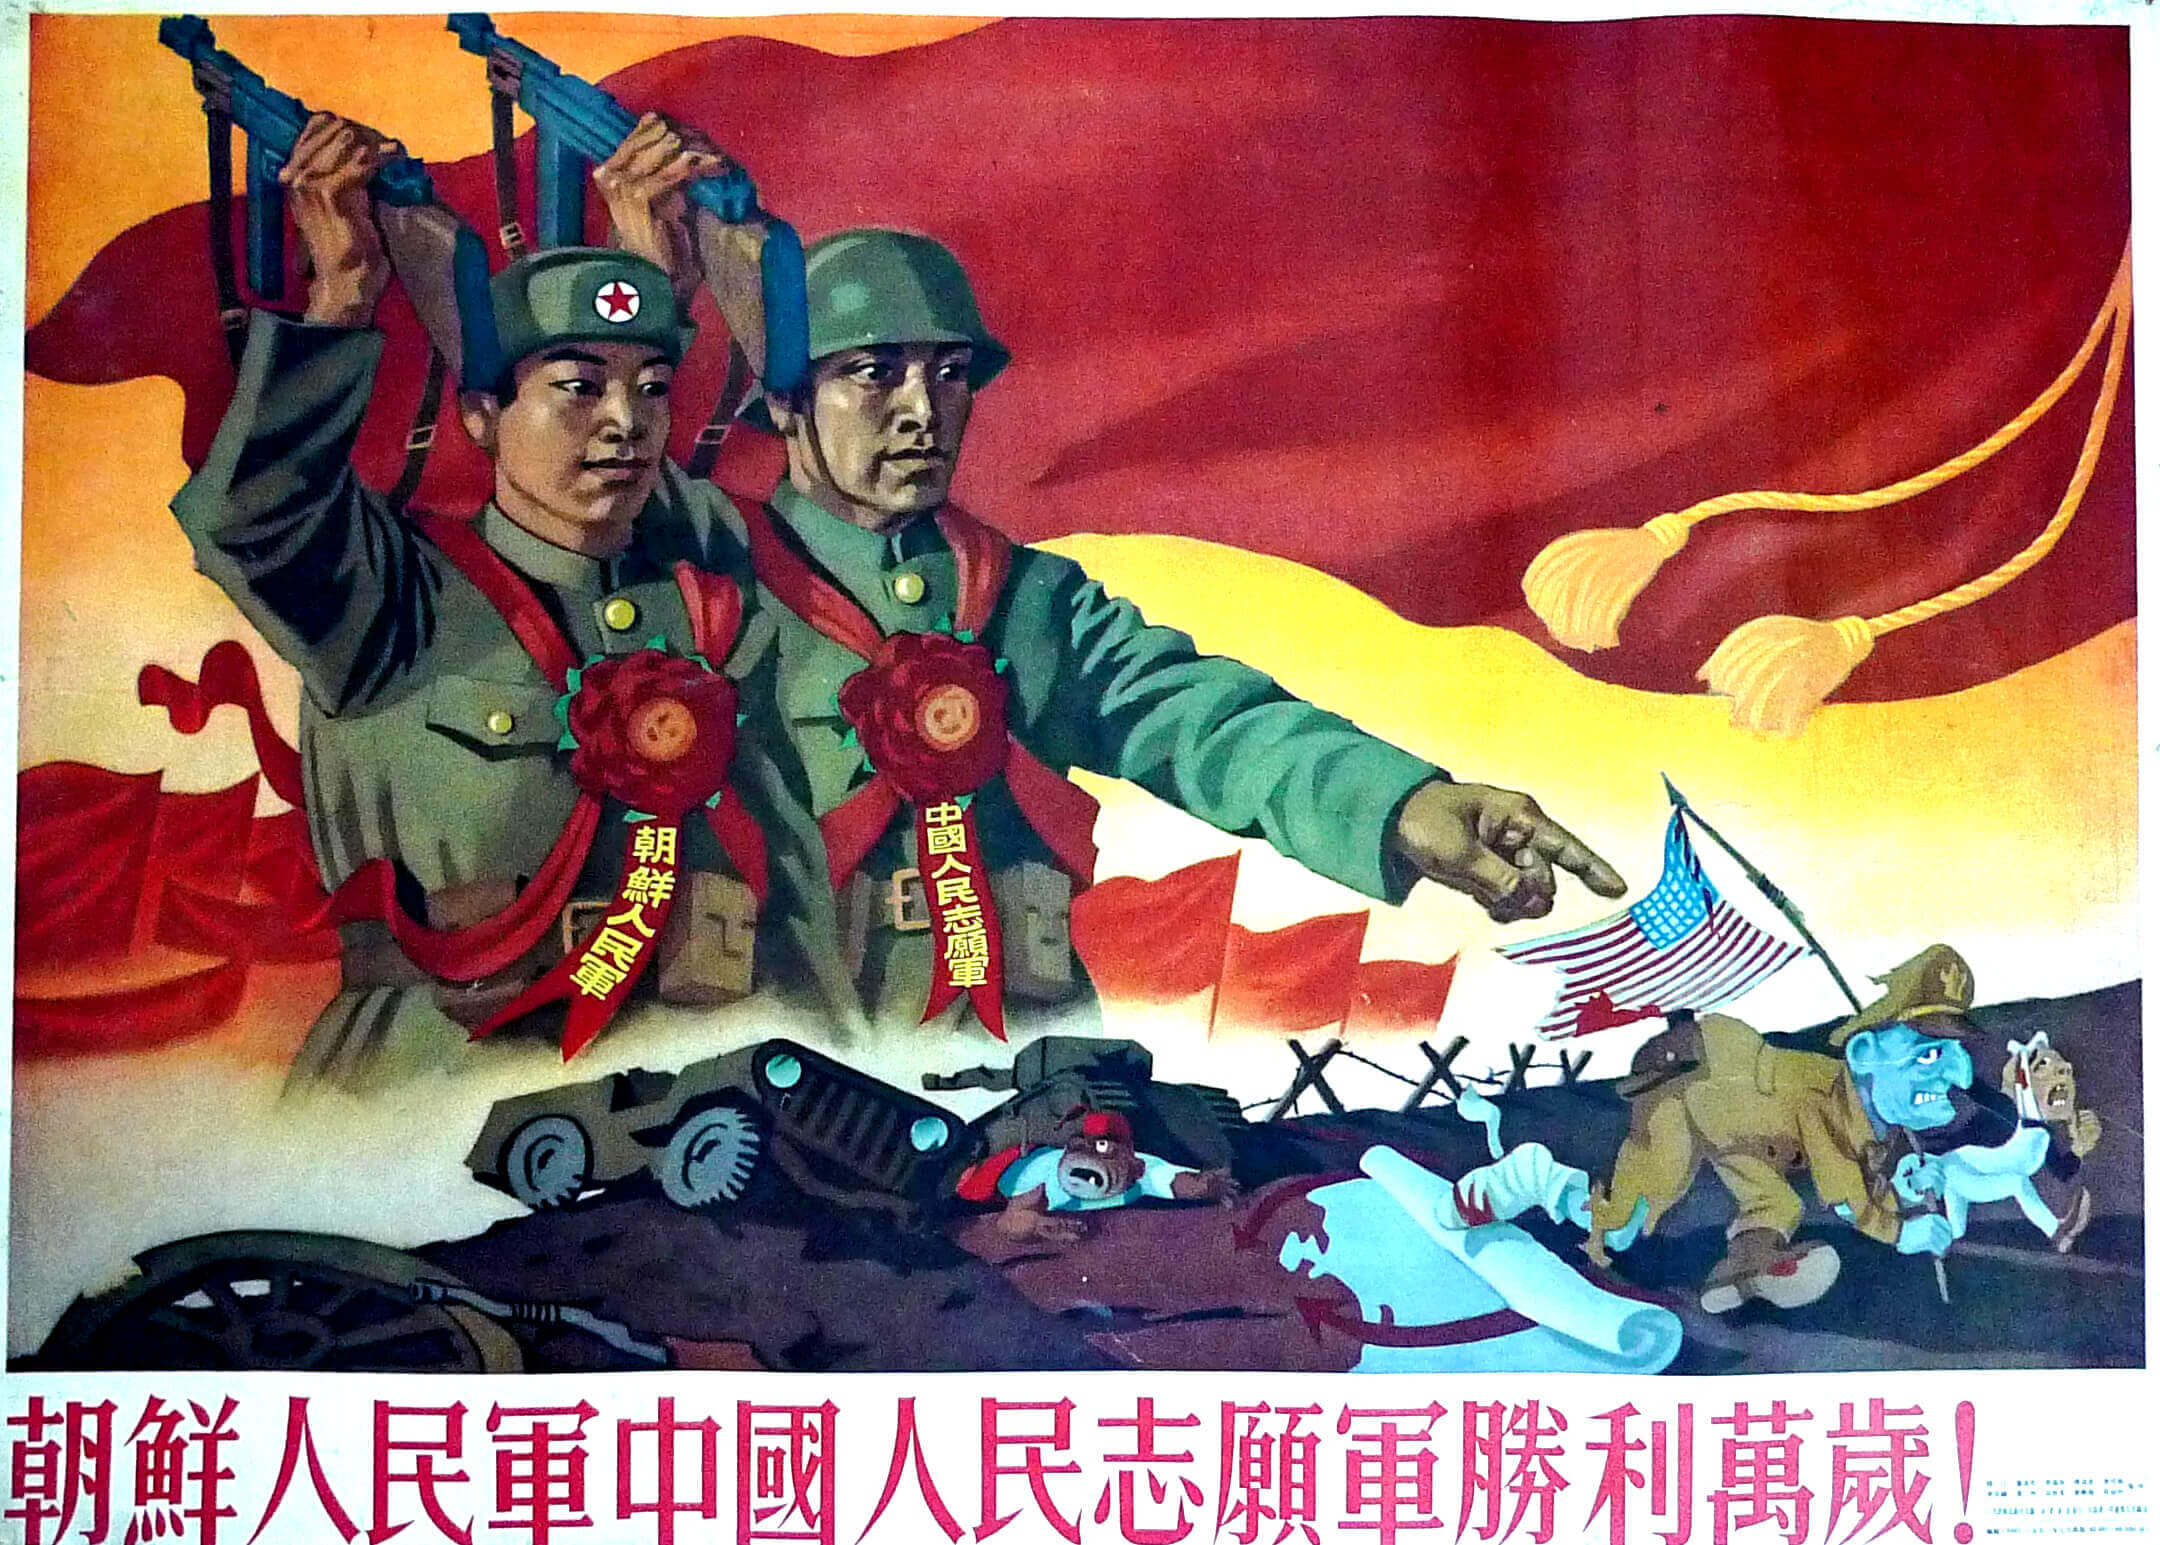 China Press Propaganda 7